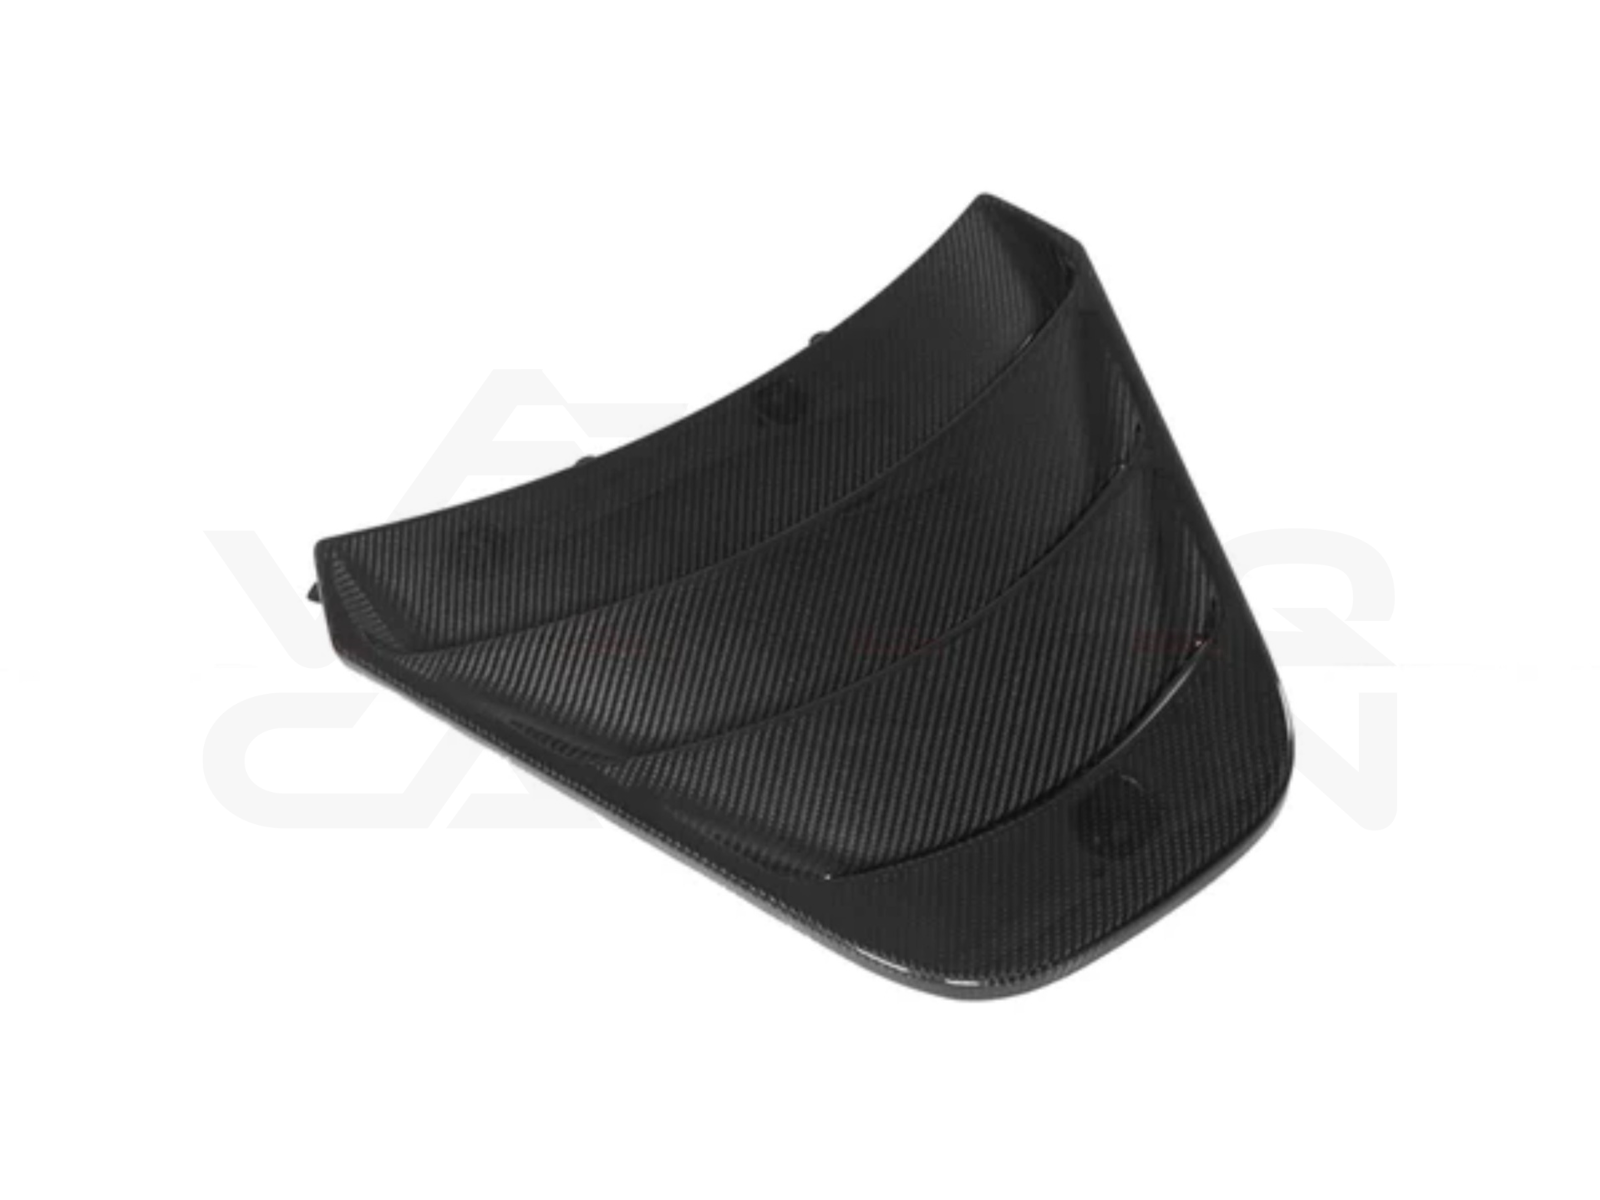 vorteq carbon fiber mclaren 720s front hood bonnet vents